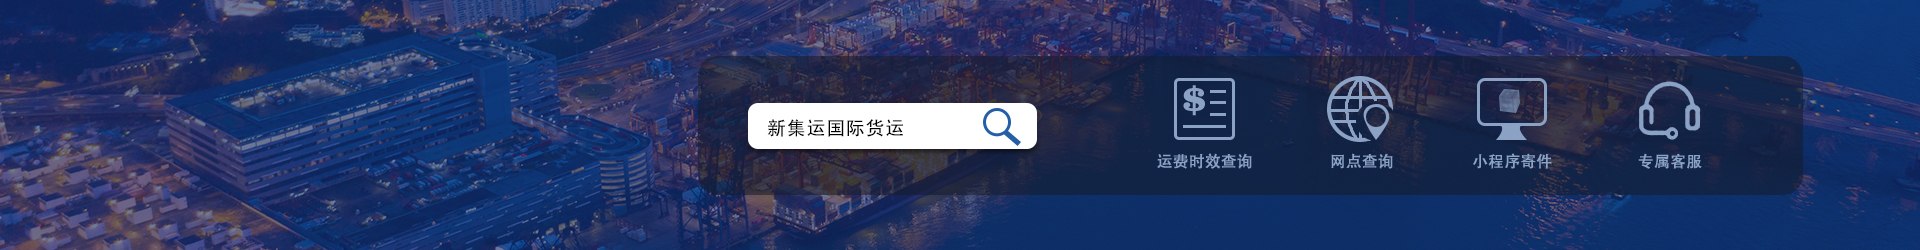 广州新集运国际货运有限公司